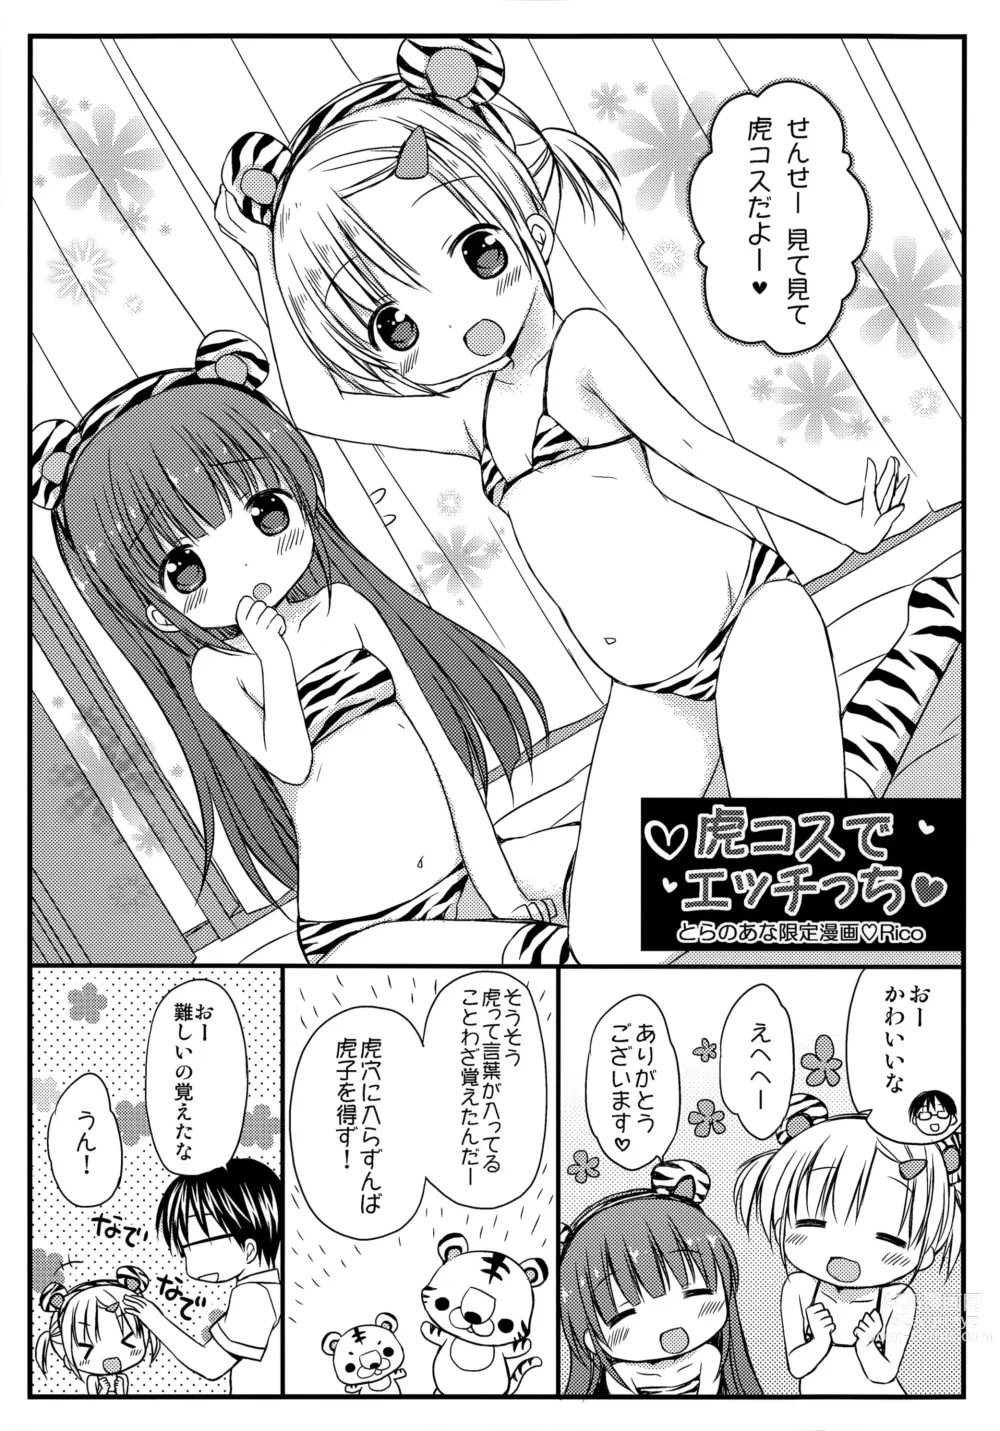 Page 1 of manga Yoiko to Ikenai Houkago Toranoana Gentei Manga Toracos de Ecchicchi